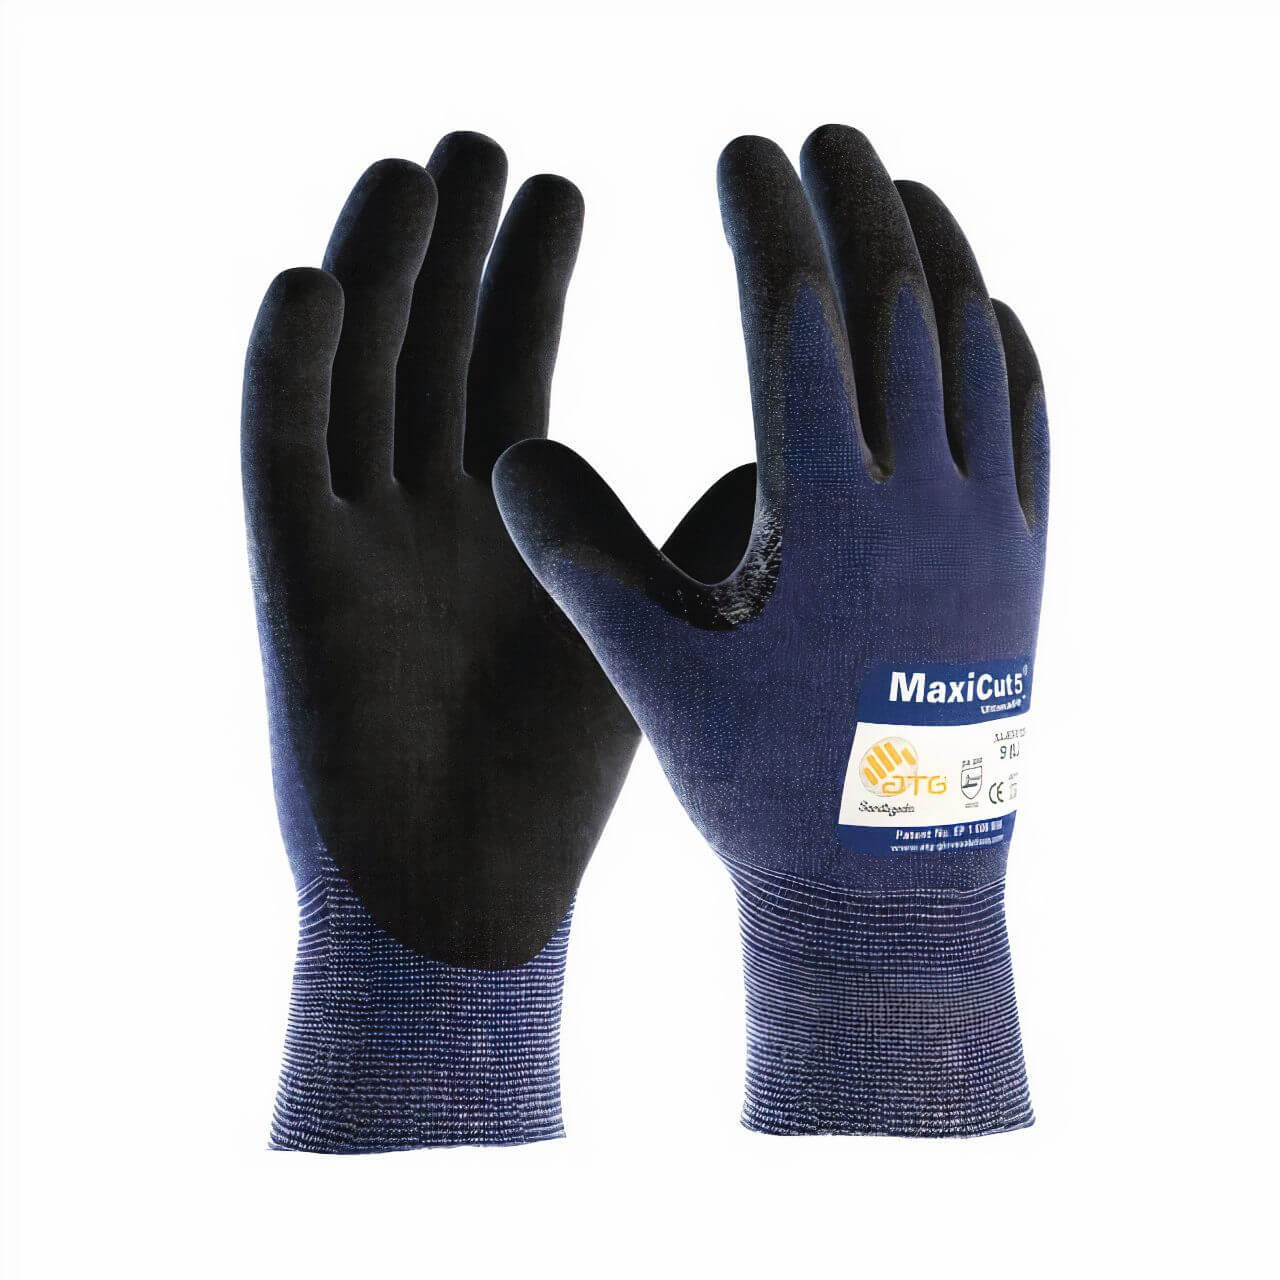 MaxiCut 5 Ultra Cut 5 Glove.